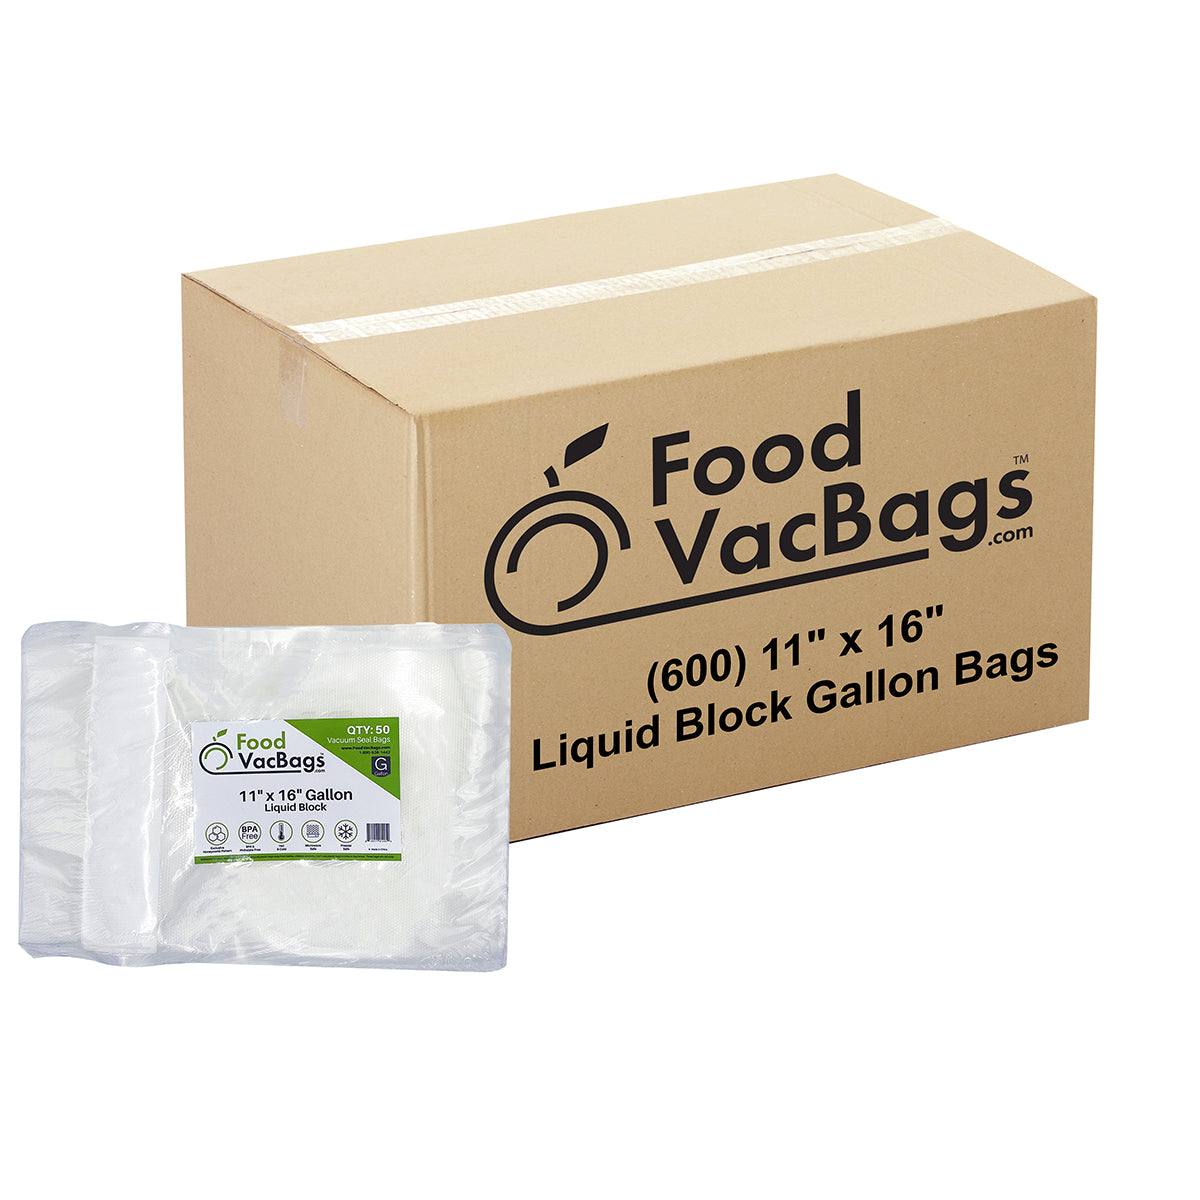 Liquid Block Gallon FoodVacBags